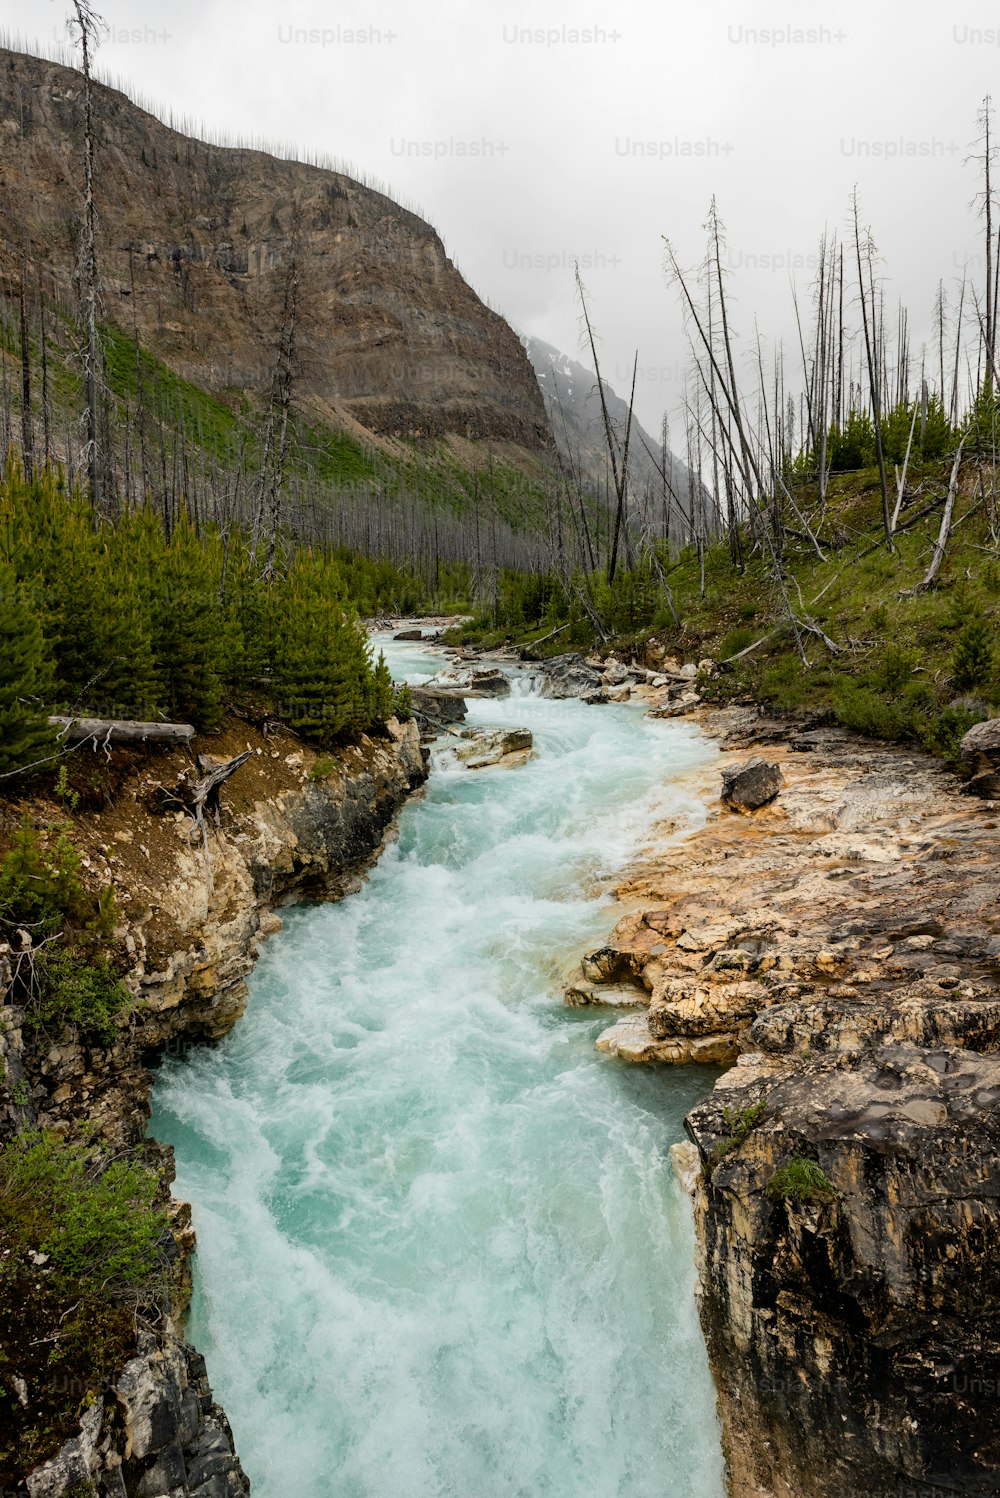 Un fiume che attraversa una zona rocciosa